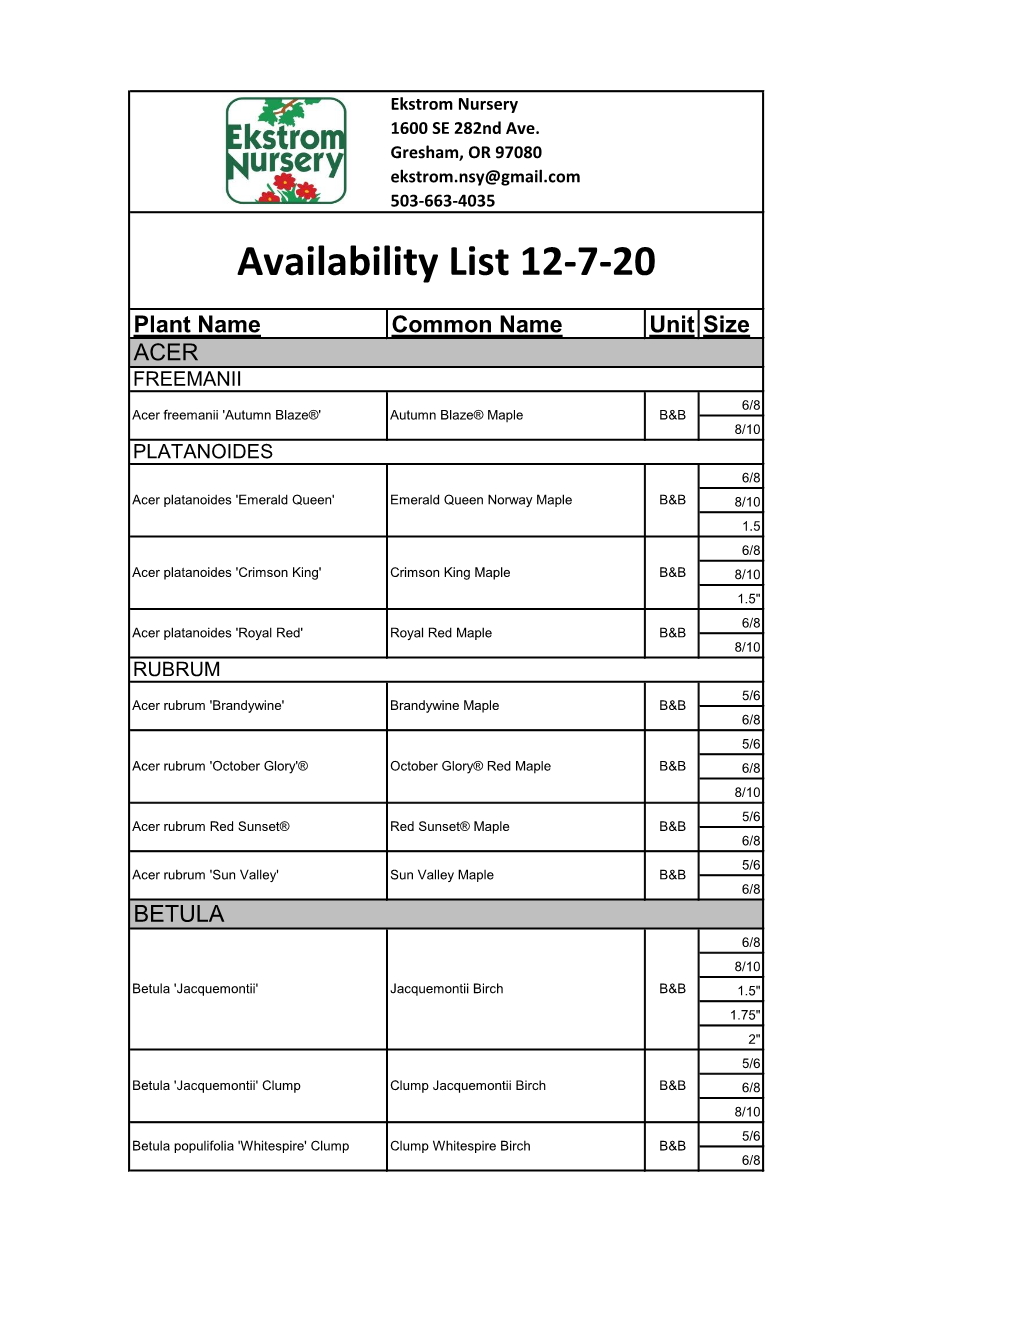 Availability List 12-7-20